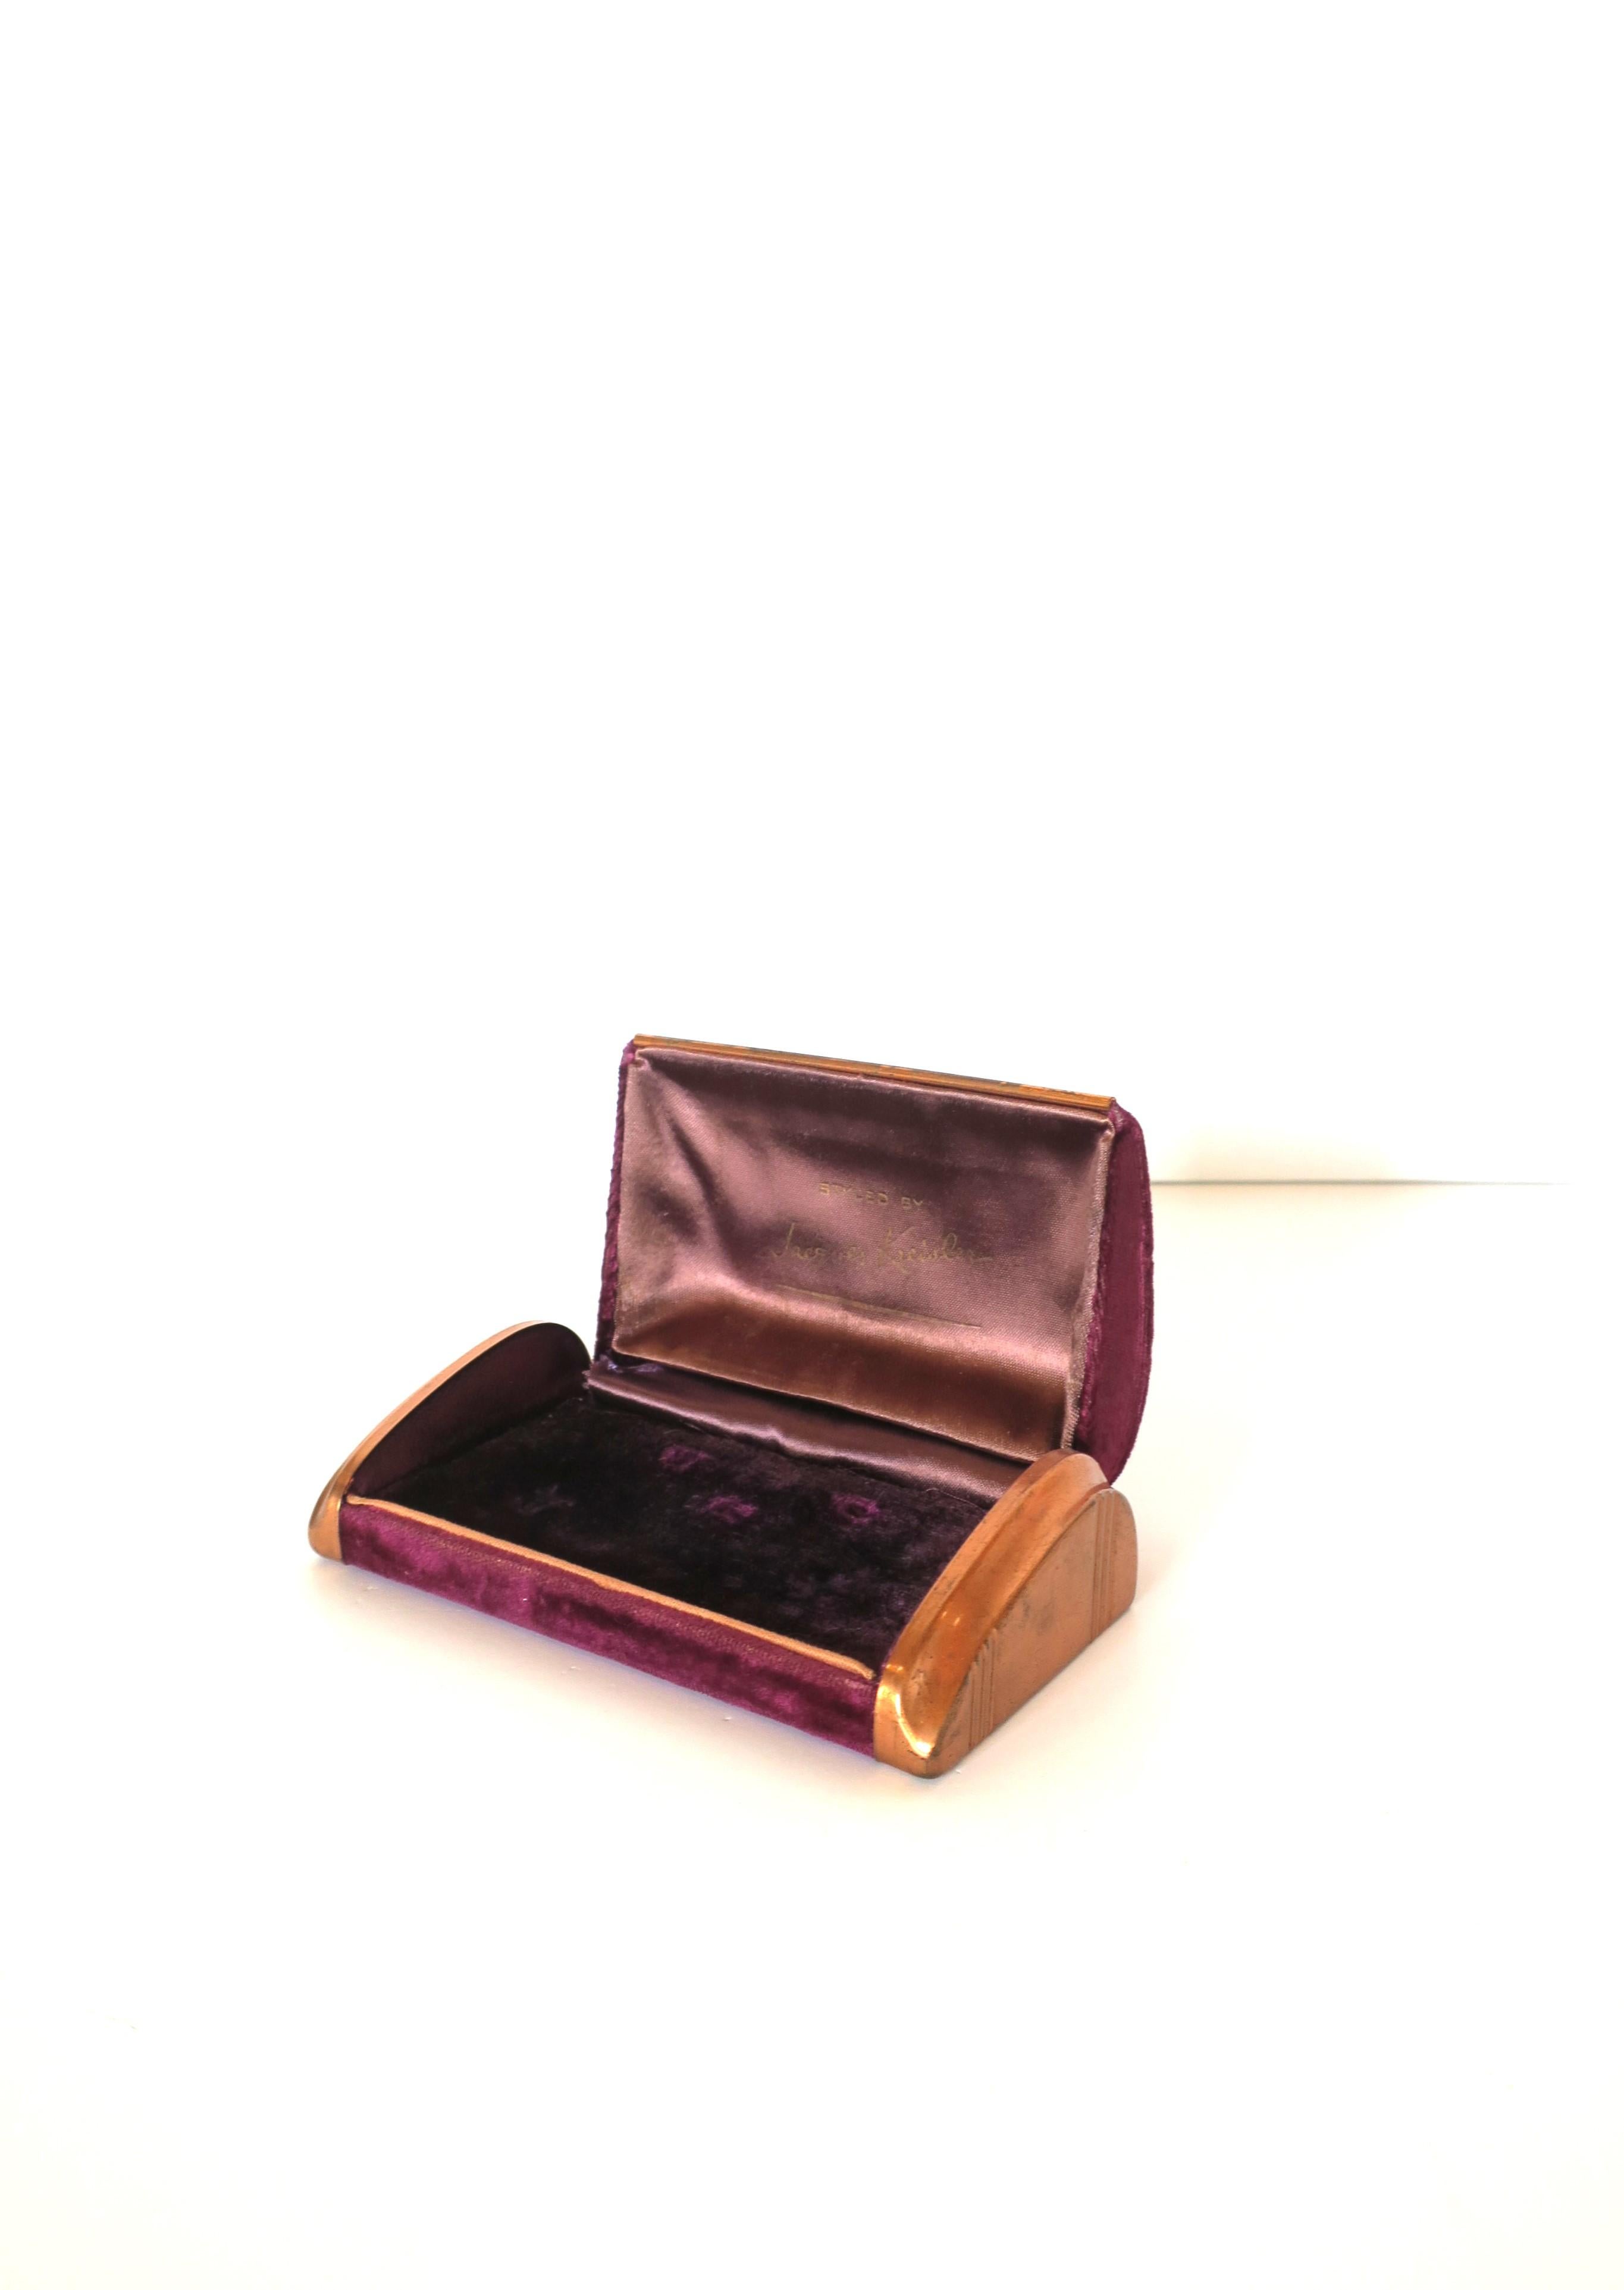 Magnifique boîte à bijoux ancienne de style Art Deco, réalisée par Jacques Kreisler, vers le début du 20e siècle, New York, New York. Boîte de couleur aubergine en velours et satin, finie avec des côtés en métal cuivré, couvercle à